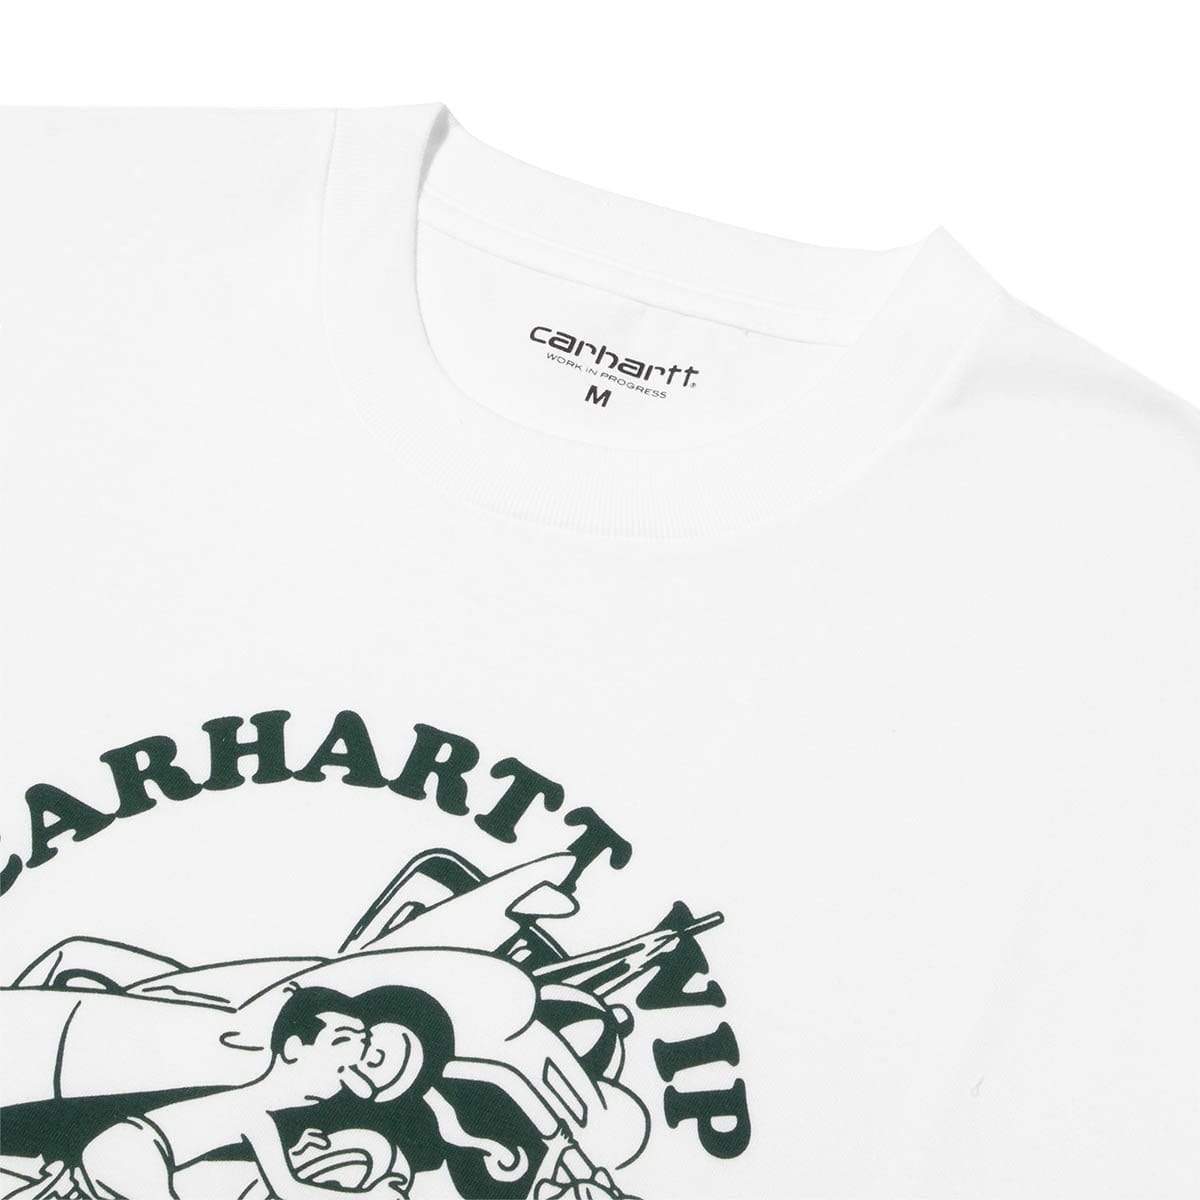 Carhartt W.I.P. T-Shirts S/S FLAT TIRE T-SHIRT